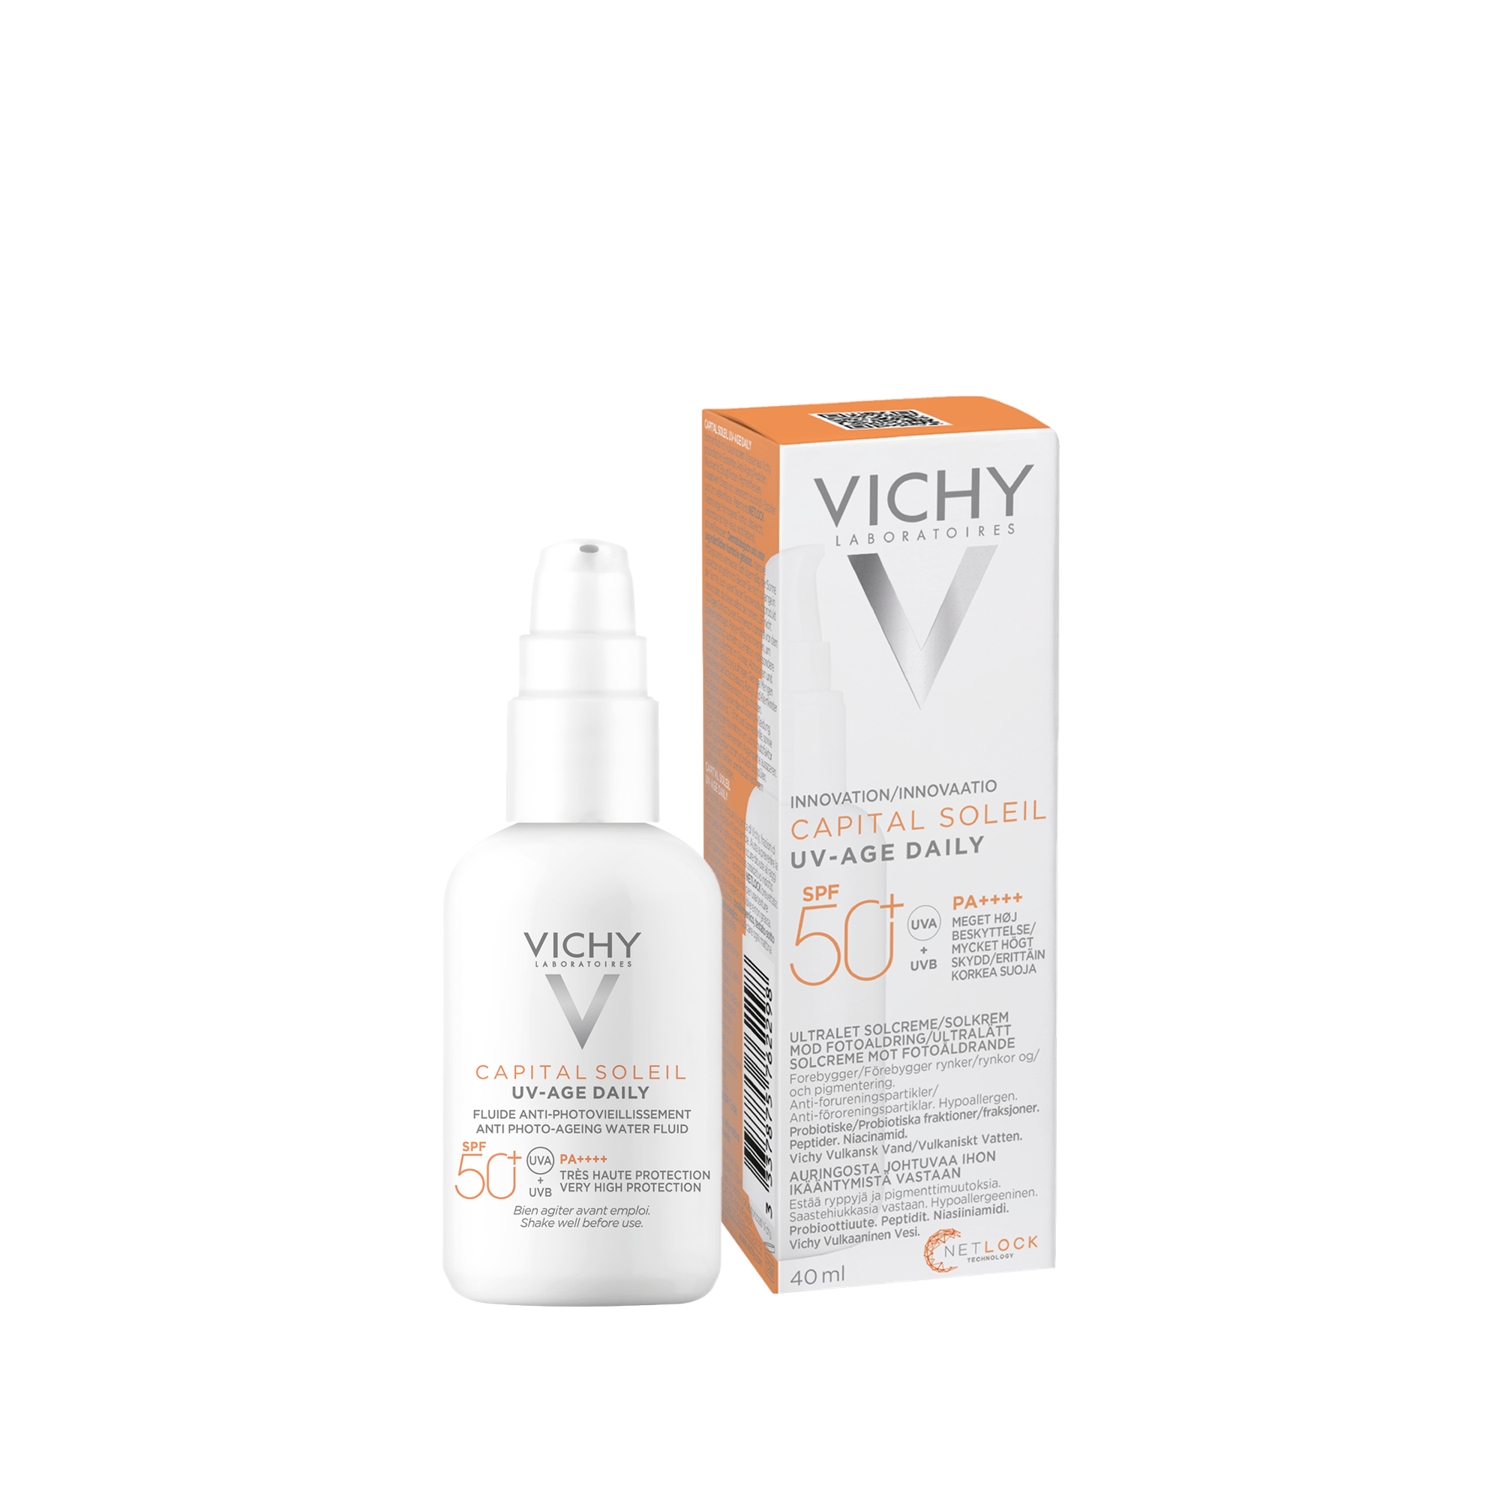 Vichy Capital Soleil UV-age Daily spf50+ купить.